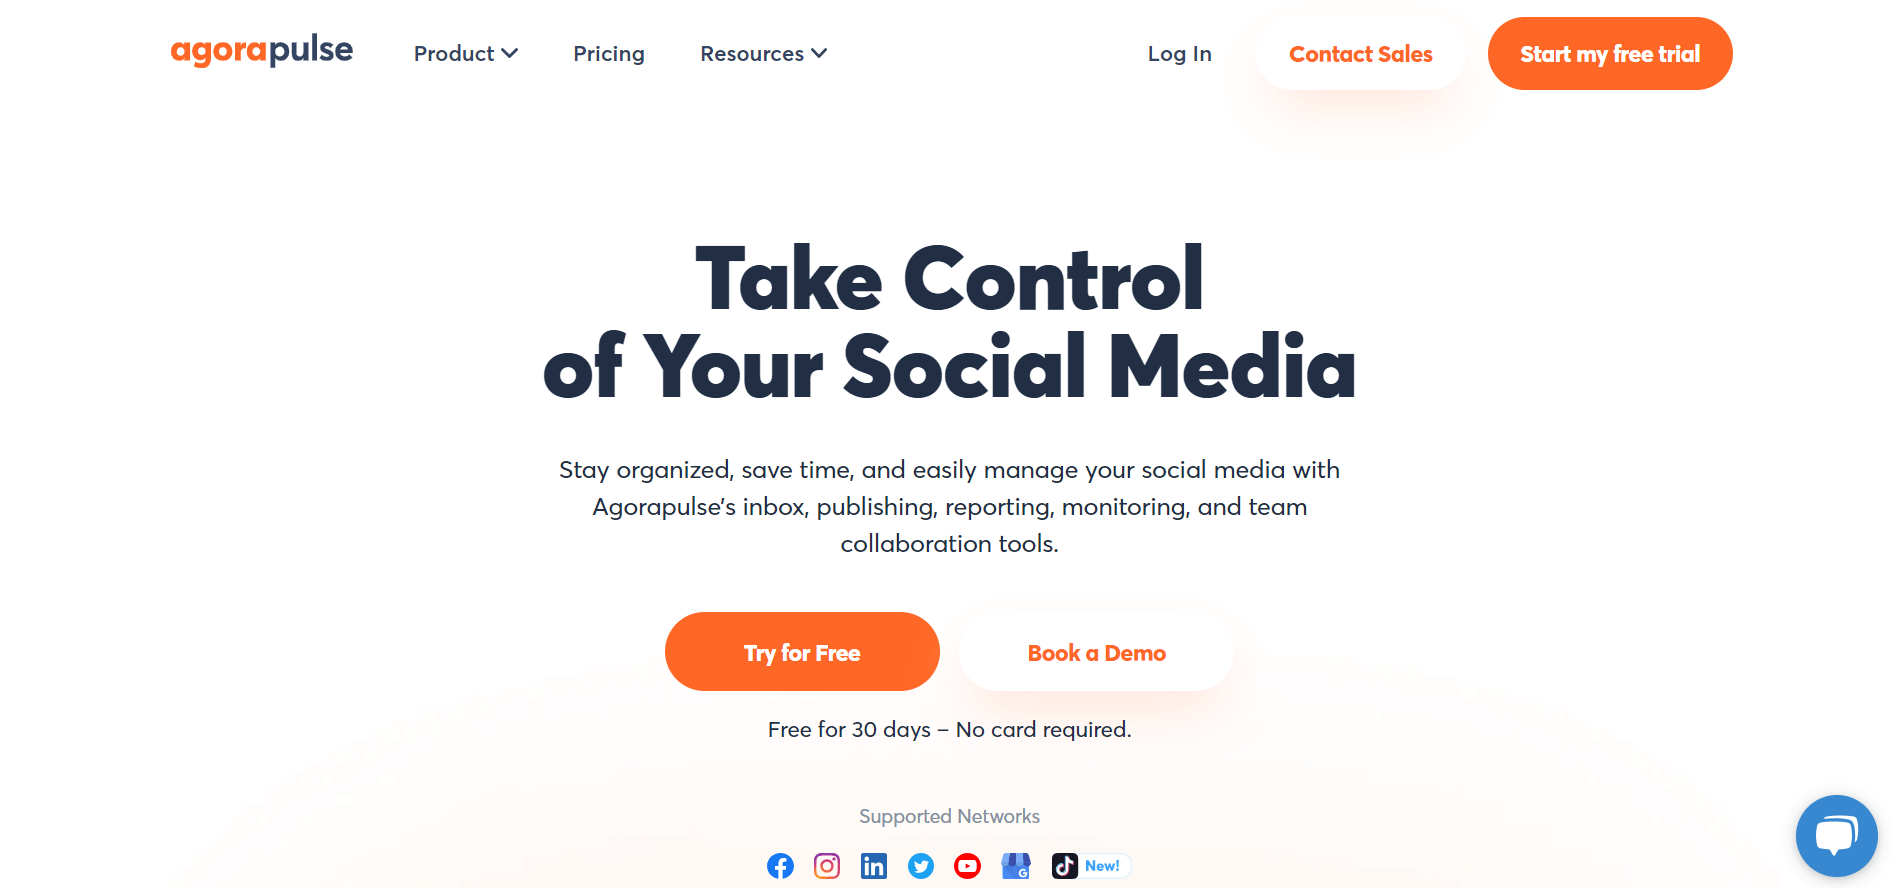 Agorapulse homescreen showing the motto "Take control of your social media".